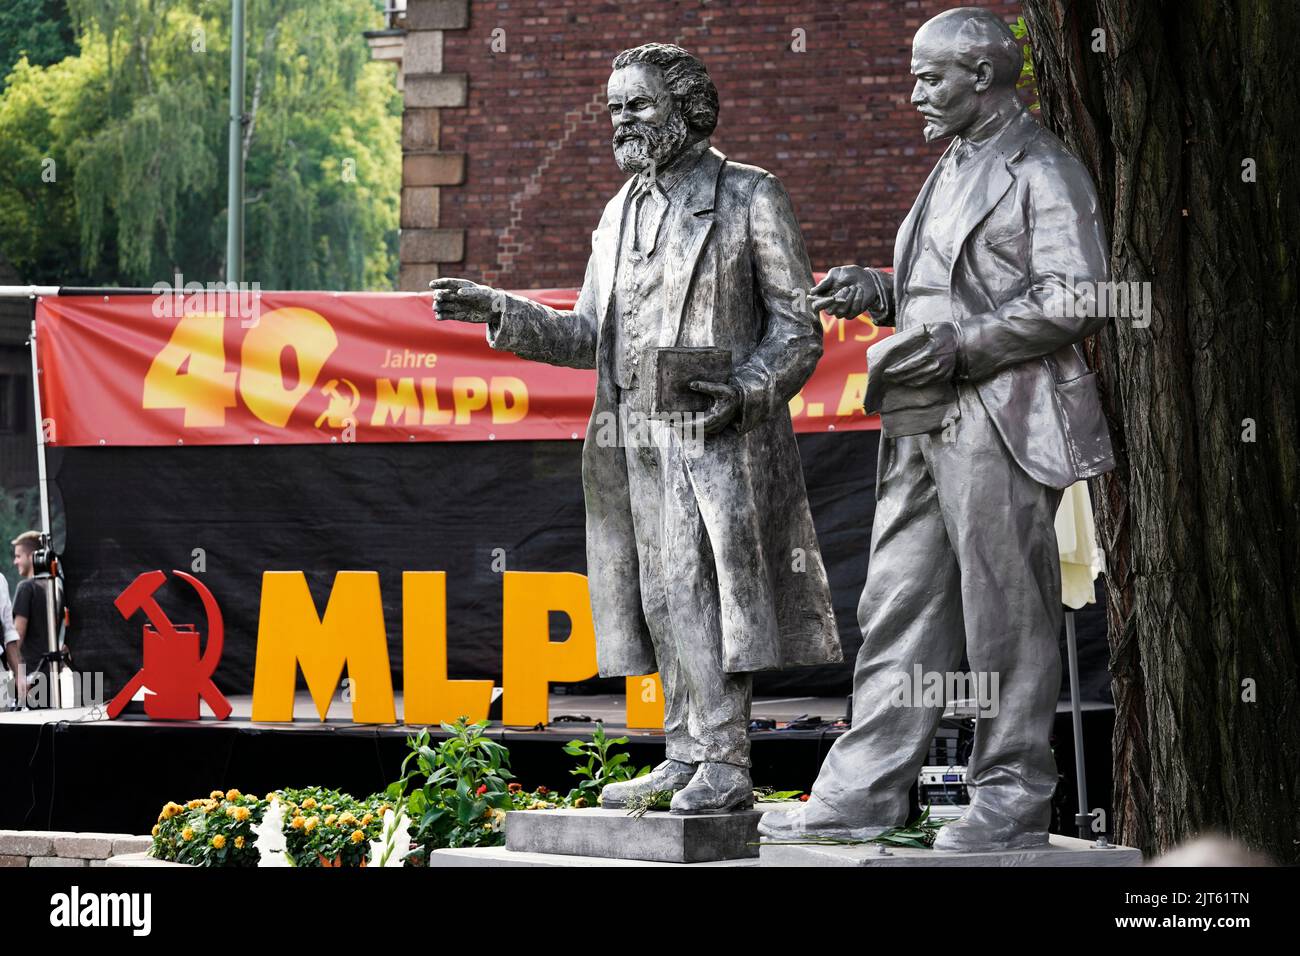 El partido comunista MLPD (Partido Marxista-Leninista de Alemania) dio a conocer una estatua del teórico social Karl Marx (1818-1883) el 27 de agosto de 2022 (proth Left). La estatua de 2,11 metros hecha de aluminio fundido se encuentra justo al lado del monumento de Lenin (derecha), que el partido erigió frente a su cuartel general en Gelsenkirchen en 2020. Gelsenkirchen, Alemania, 28 de agosto de 2022 Foto de stock